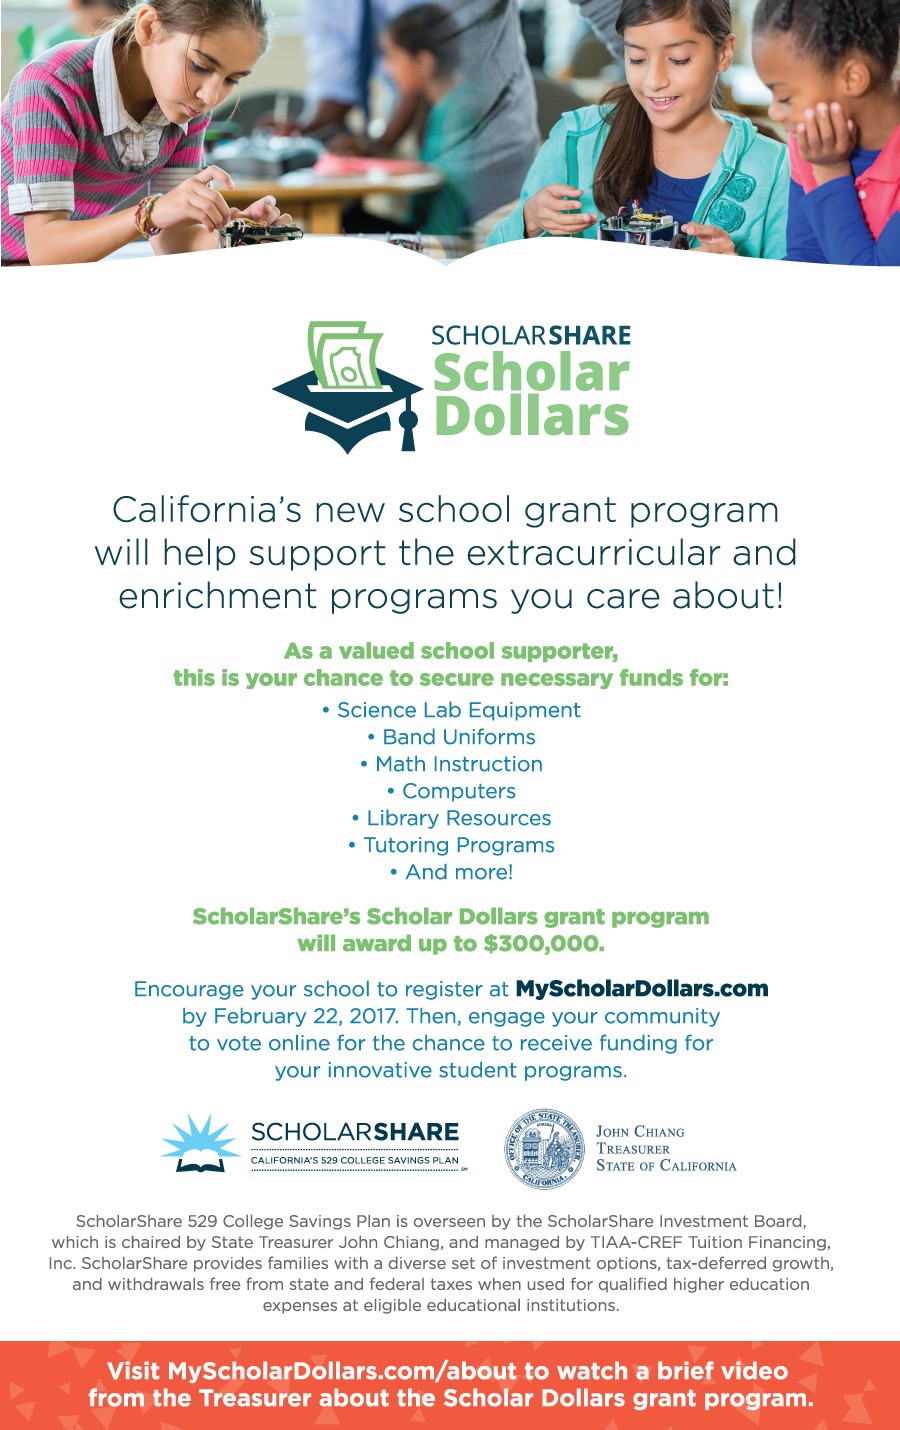 Scholar Dollars Grant from ScholarShare | innovative school programs